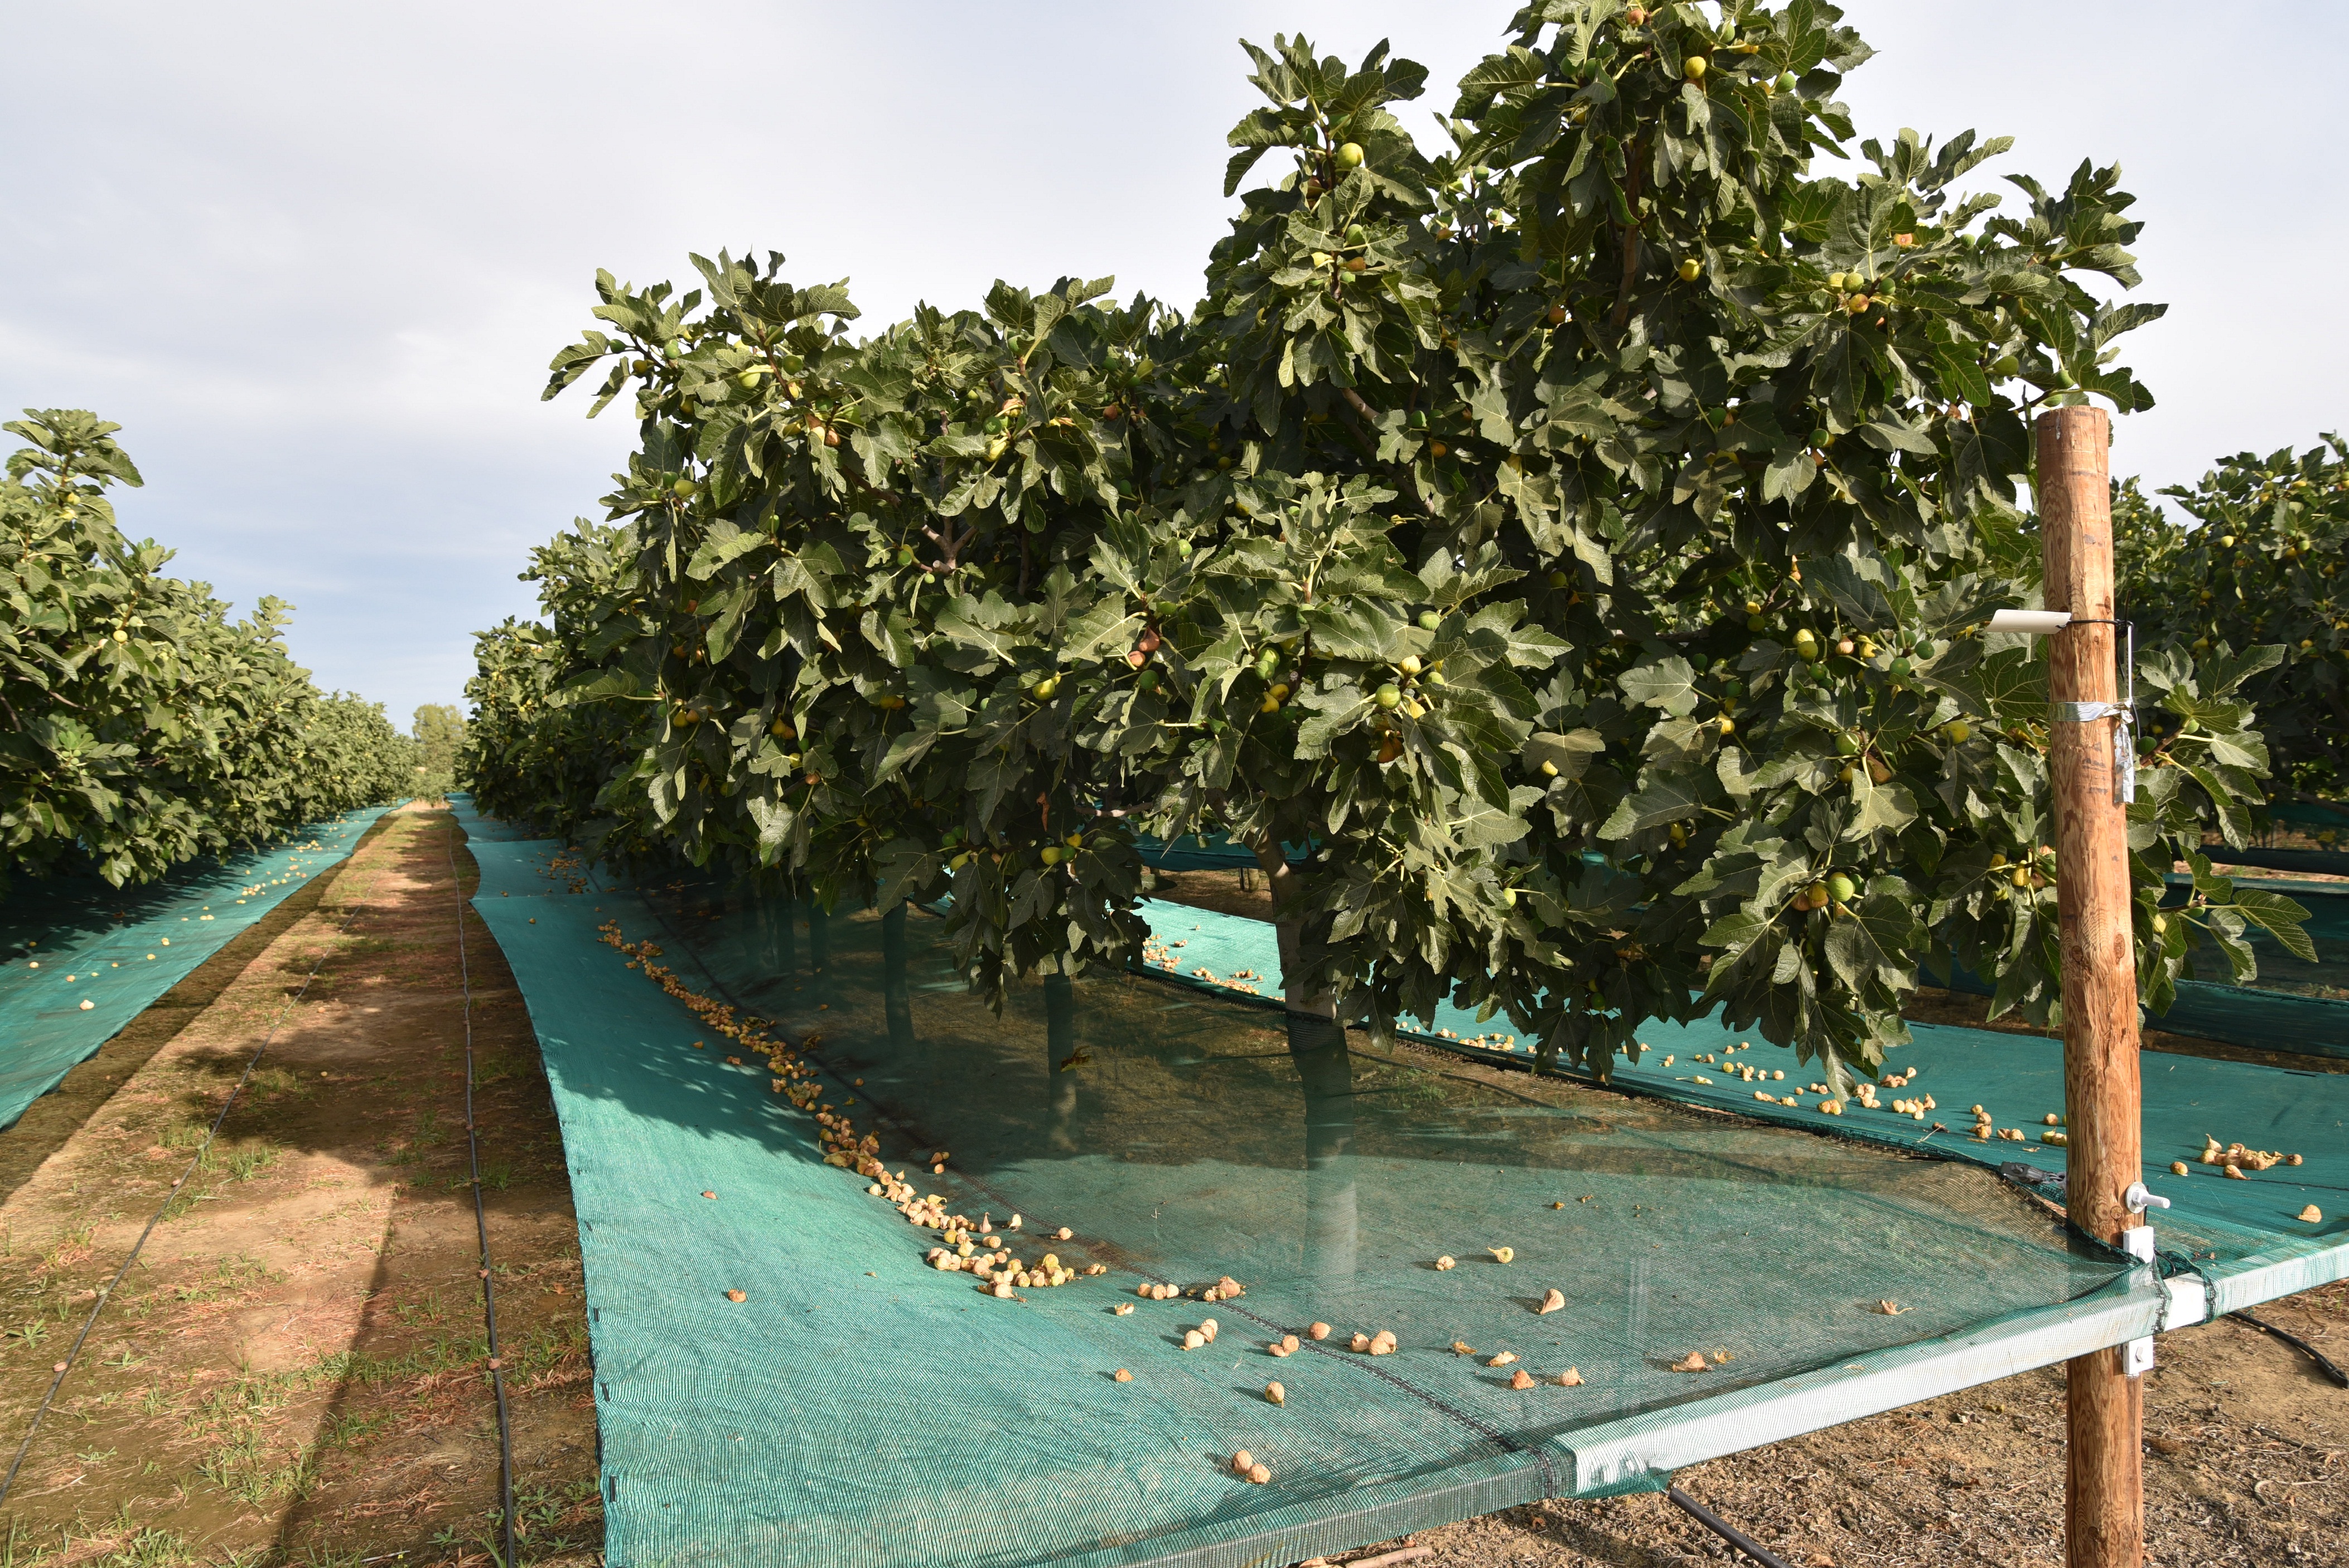 Ensaio de figo seco com redes de colheita